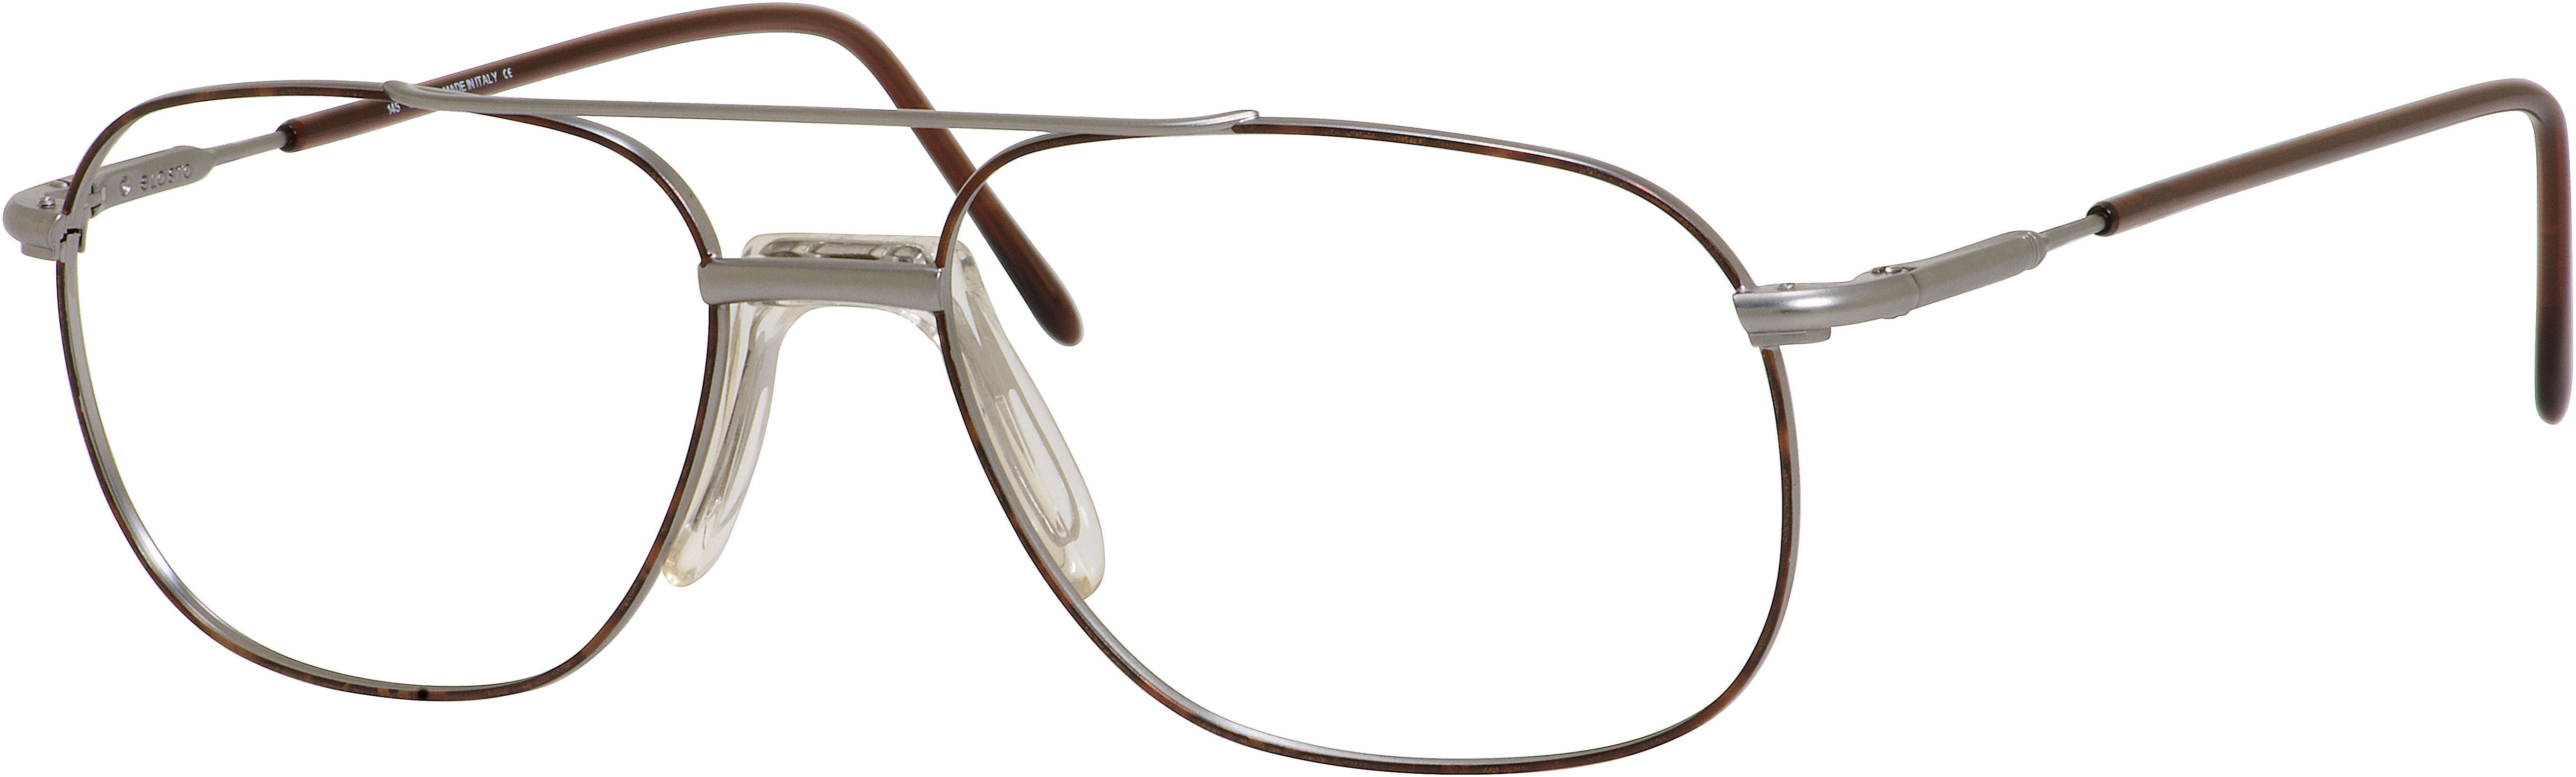  Elasta 7045 Rectangular Eyeglasses 0W1D-0W1D  Havana Pewter (00 Demo Lens)